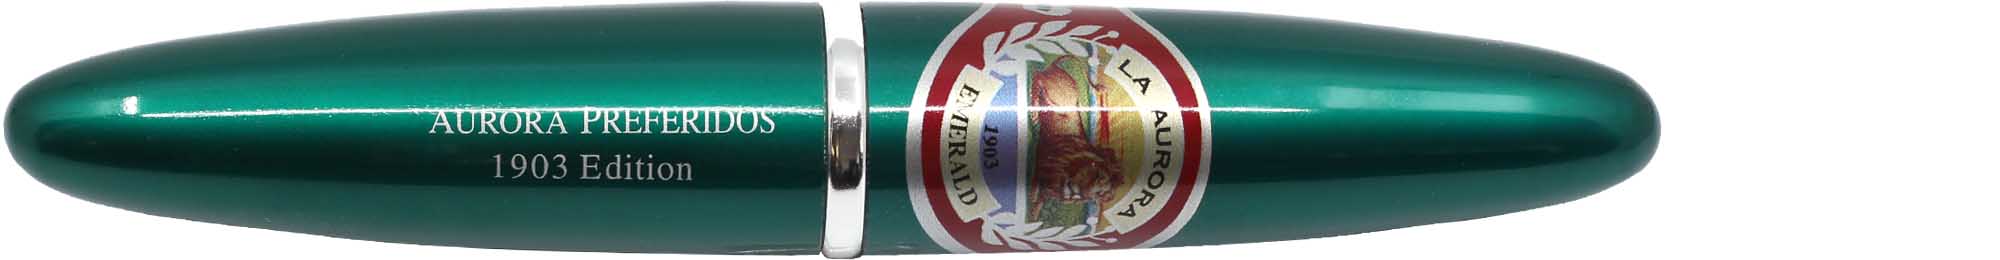 La Aurora Zigarren 1903 Preferidos Emerald